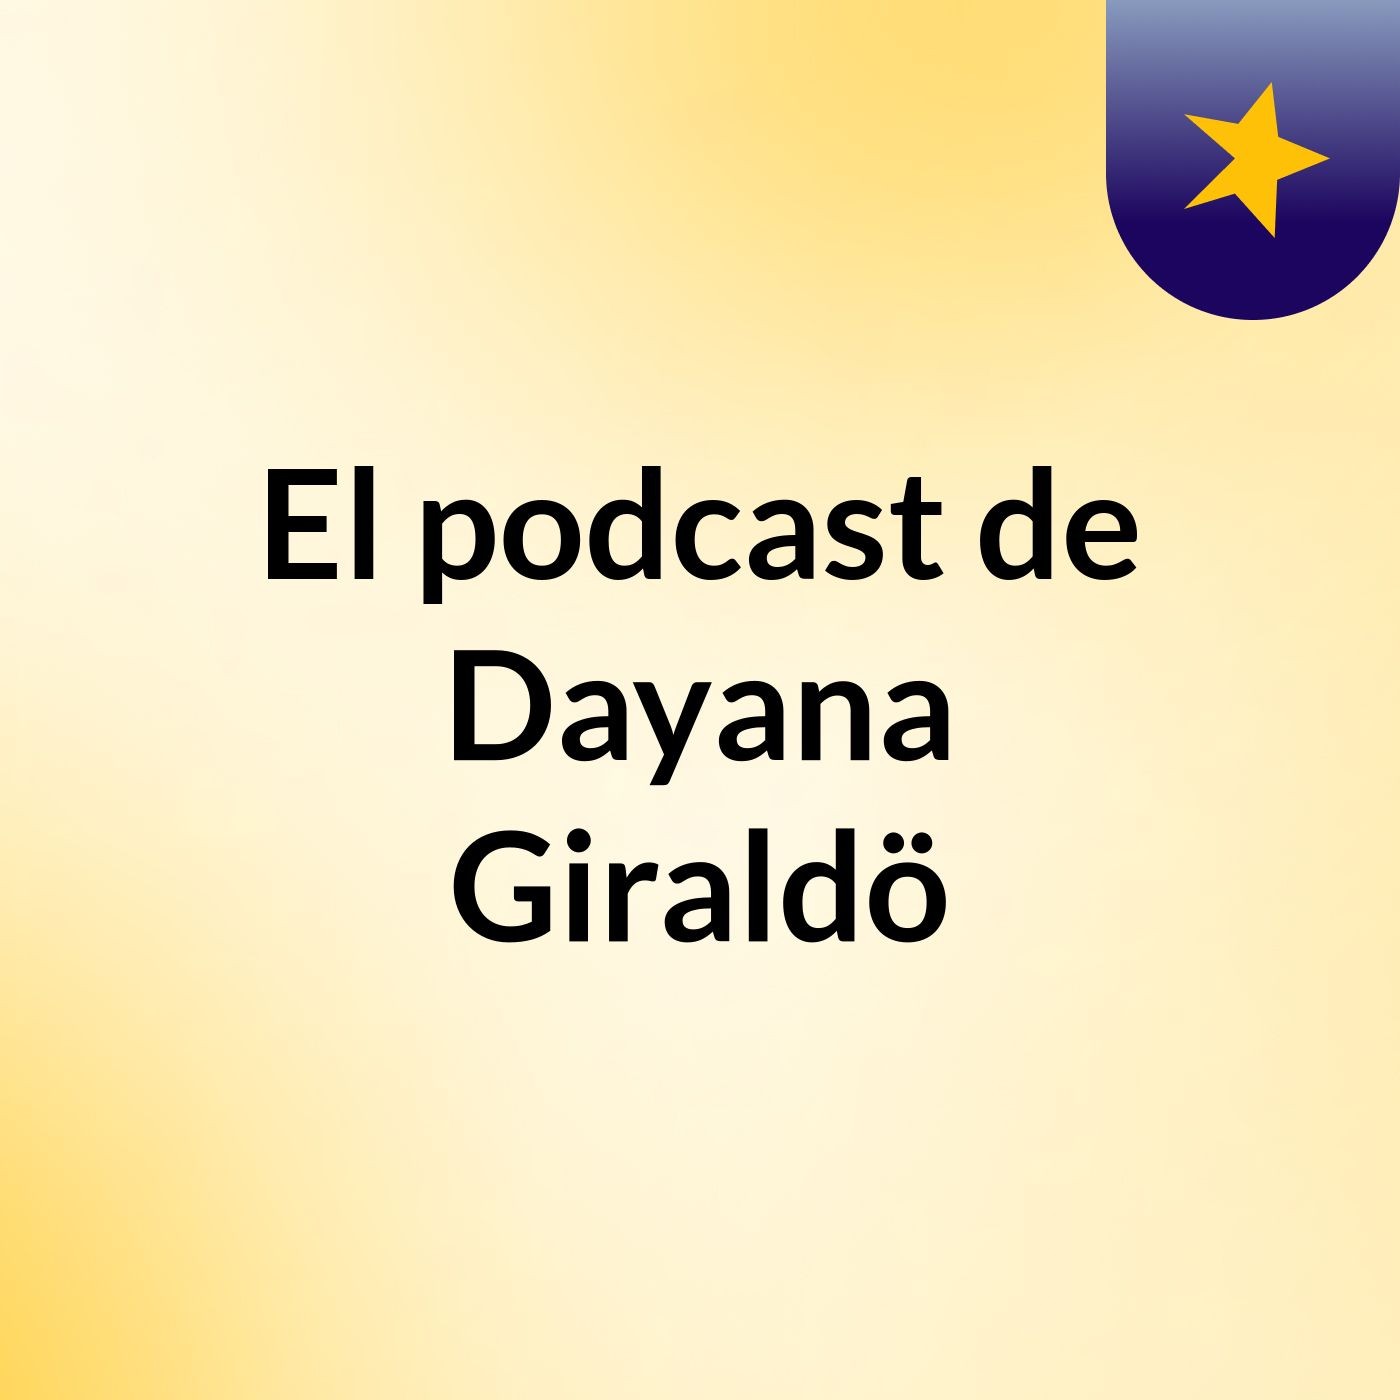 El podcast de Dayana Giraldö